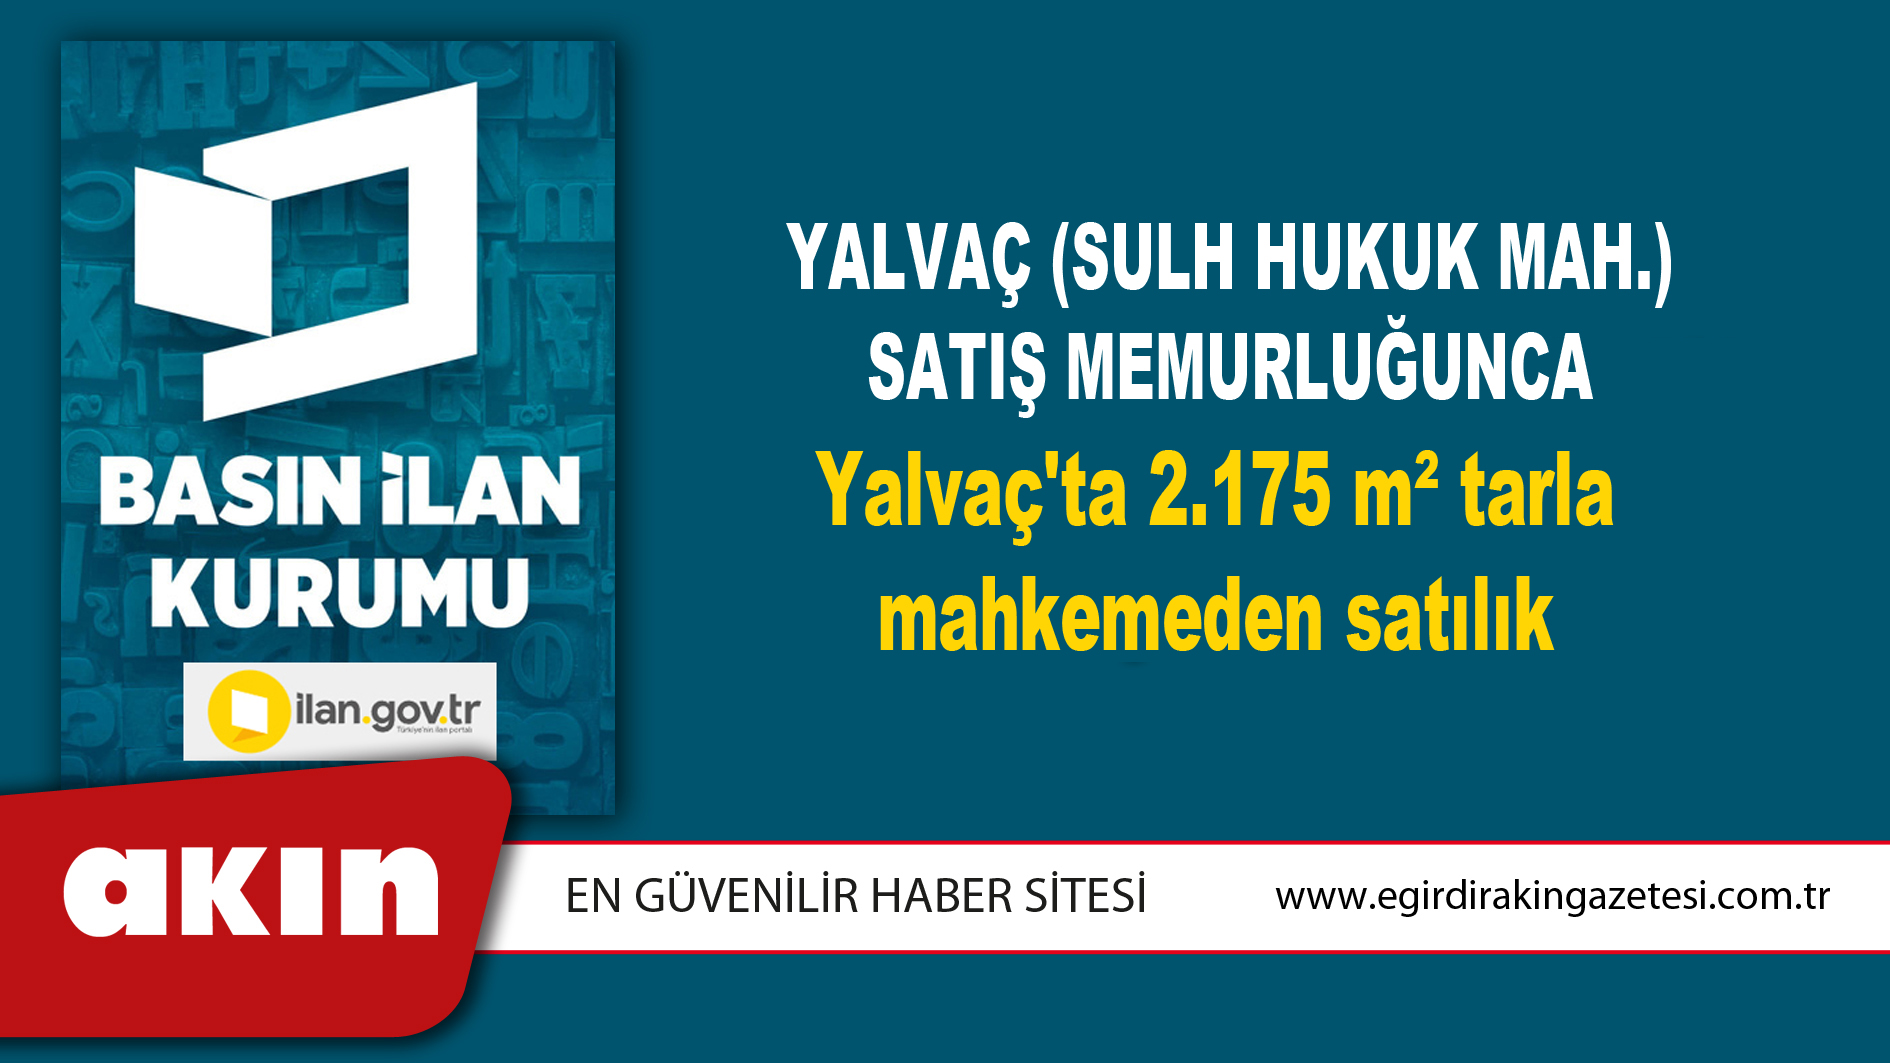 Yalvaç (Sulh Hukuk Mah.) Satış Memurluğunca Yalvaç'ta 2.175 m² tarla mahkemeden satılık